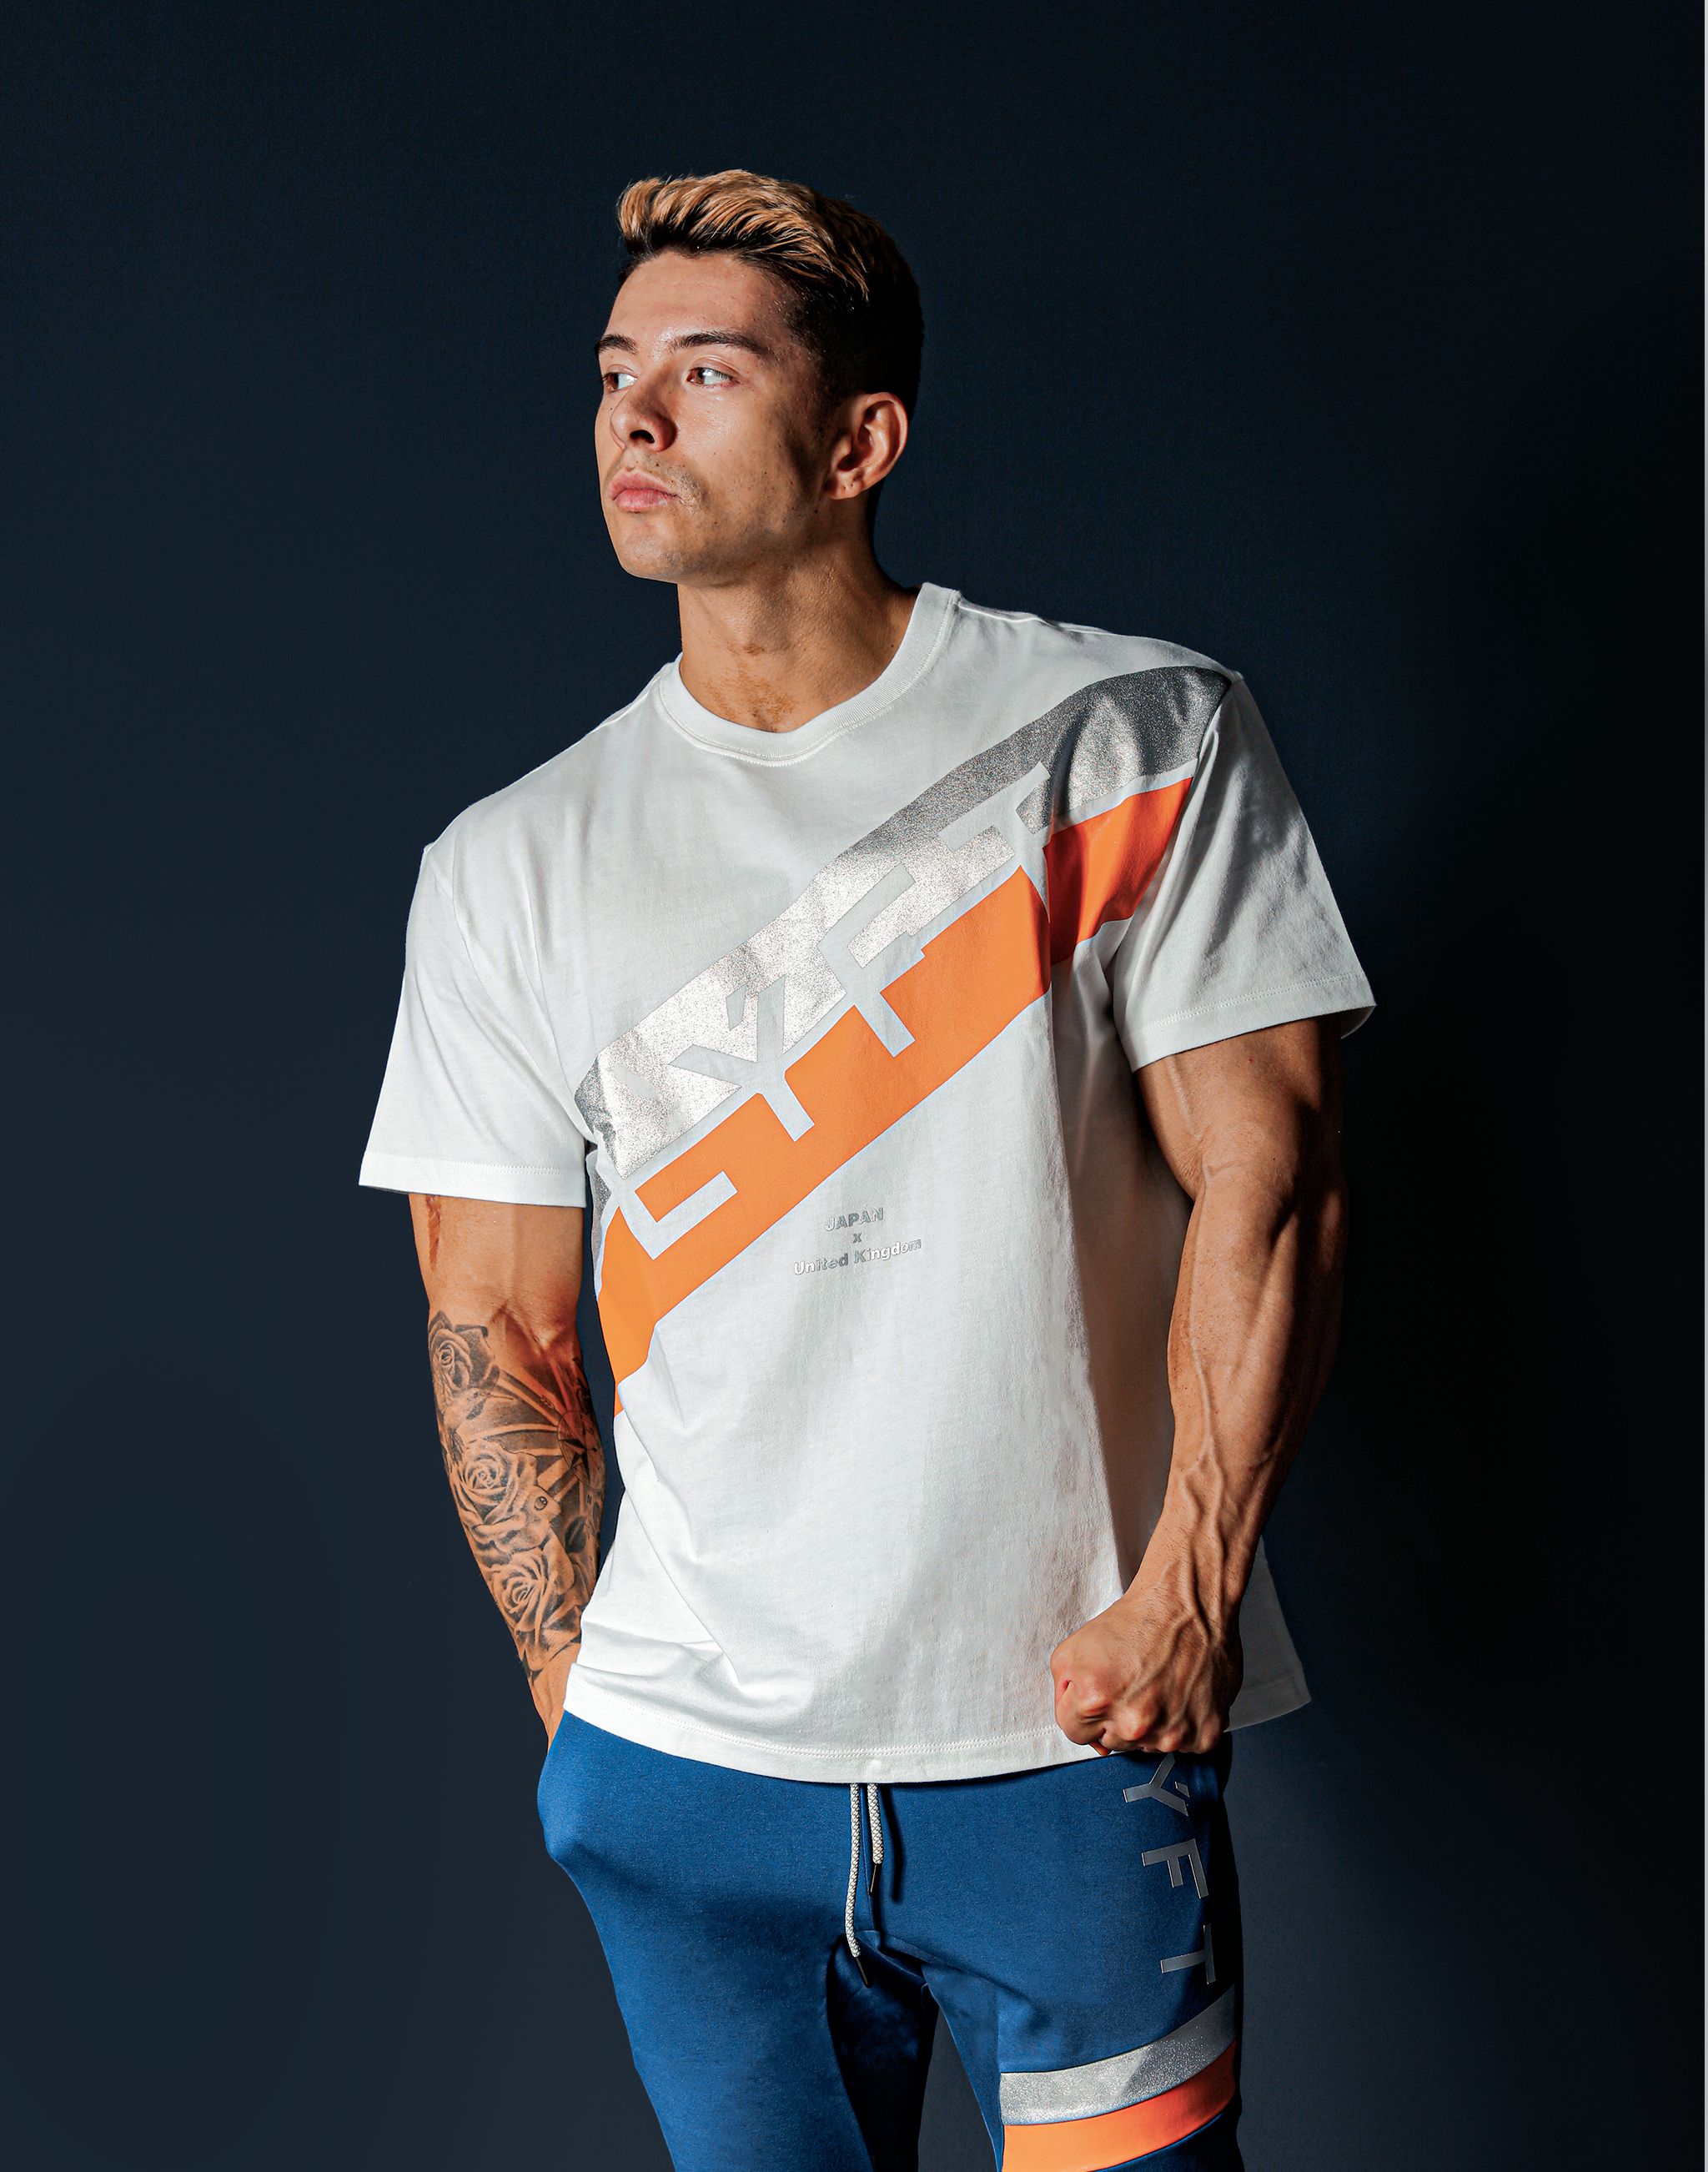 LYFT XLサイズ半袖TシャツセットTシャツ/カットソー(半袖/袖なし)